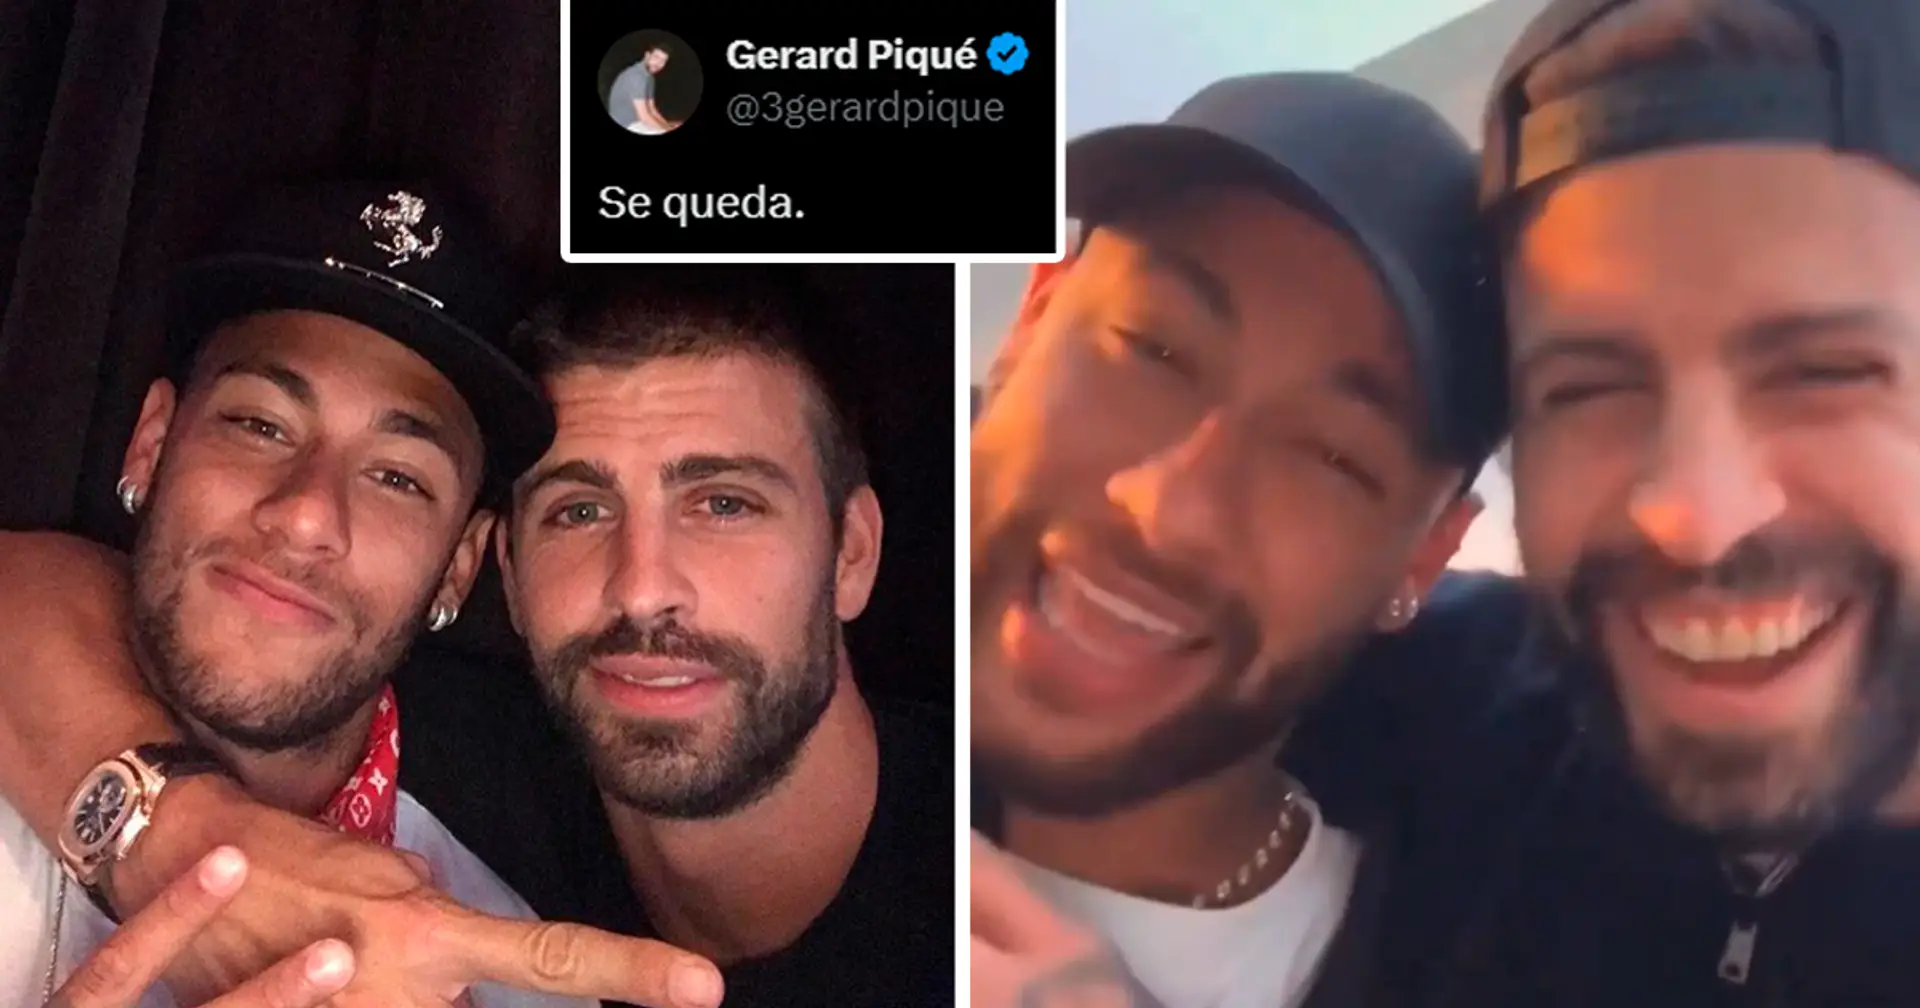 "Maintenant oui, se queda" : Neymar et Piqué recréent ensemble le mème posté par Gerard